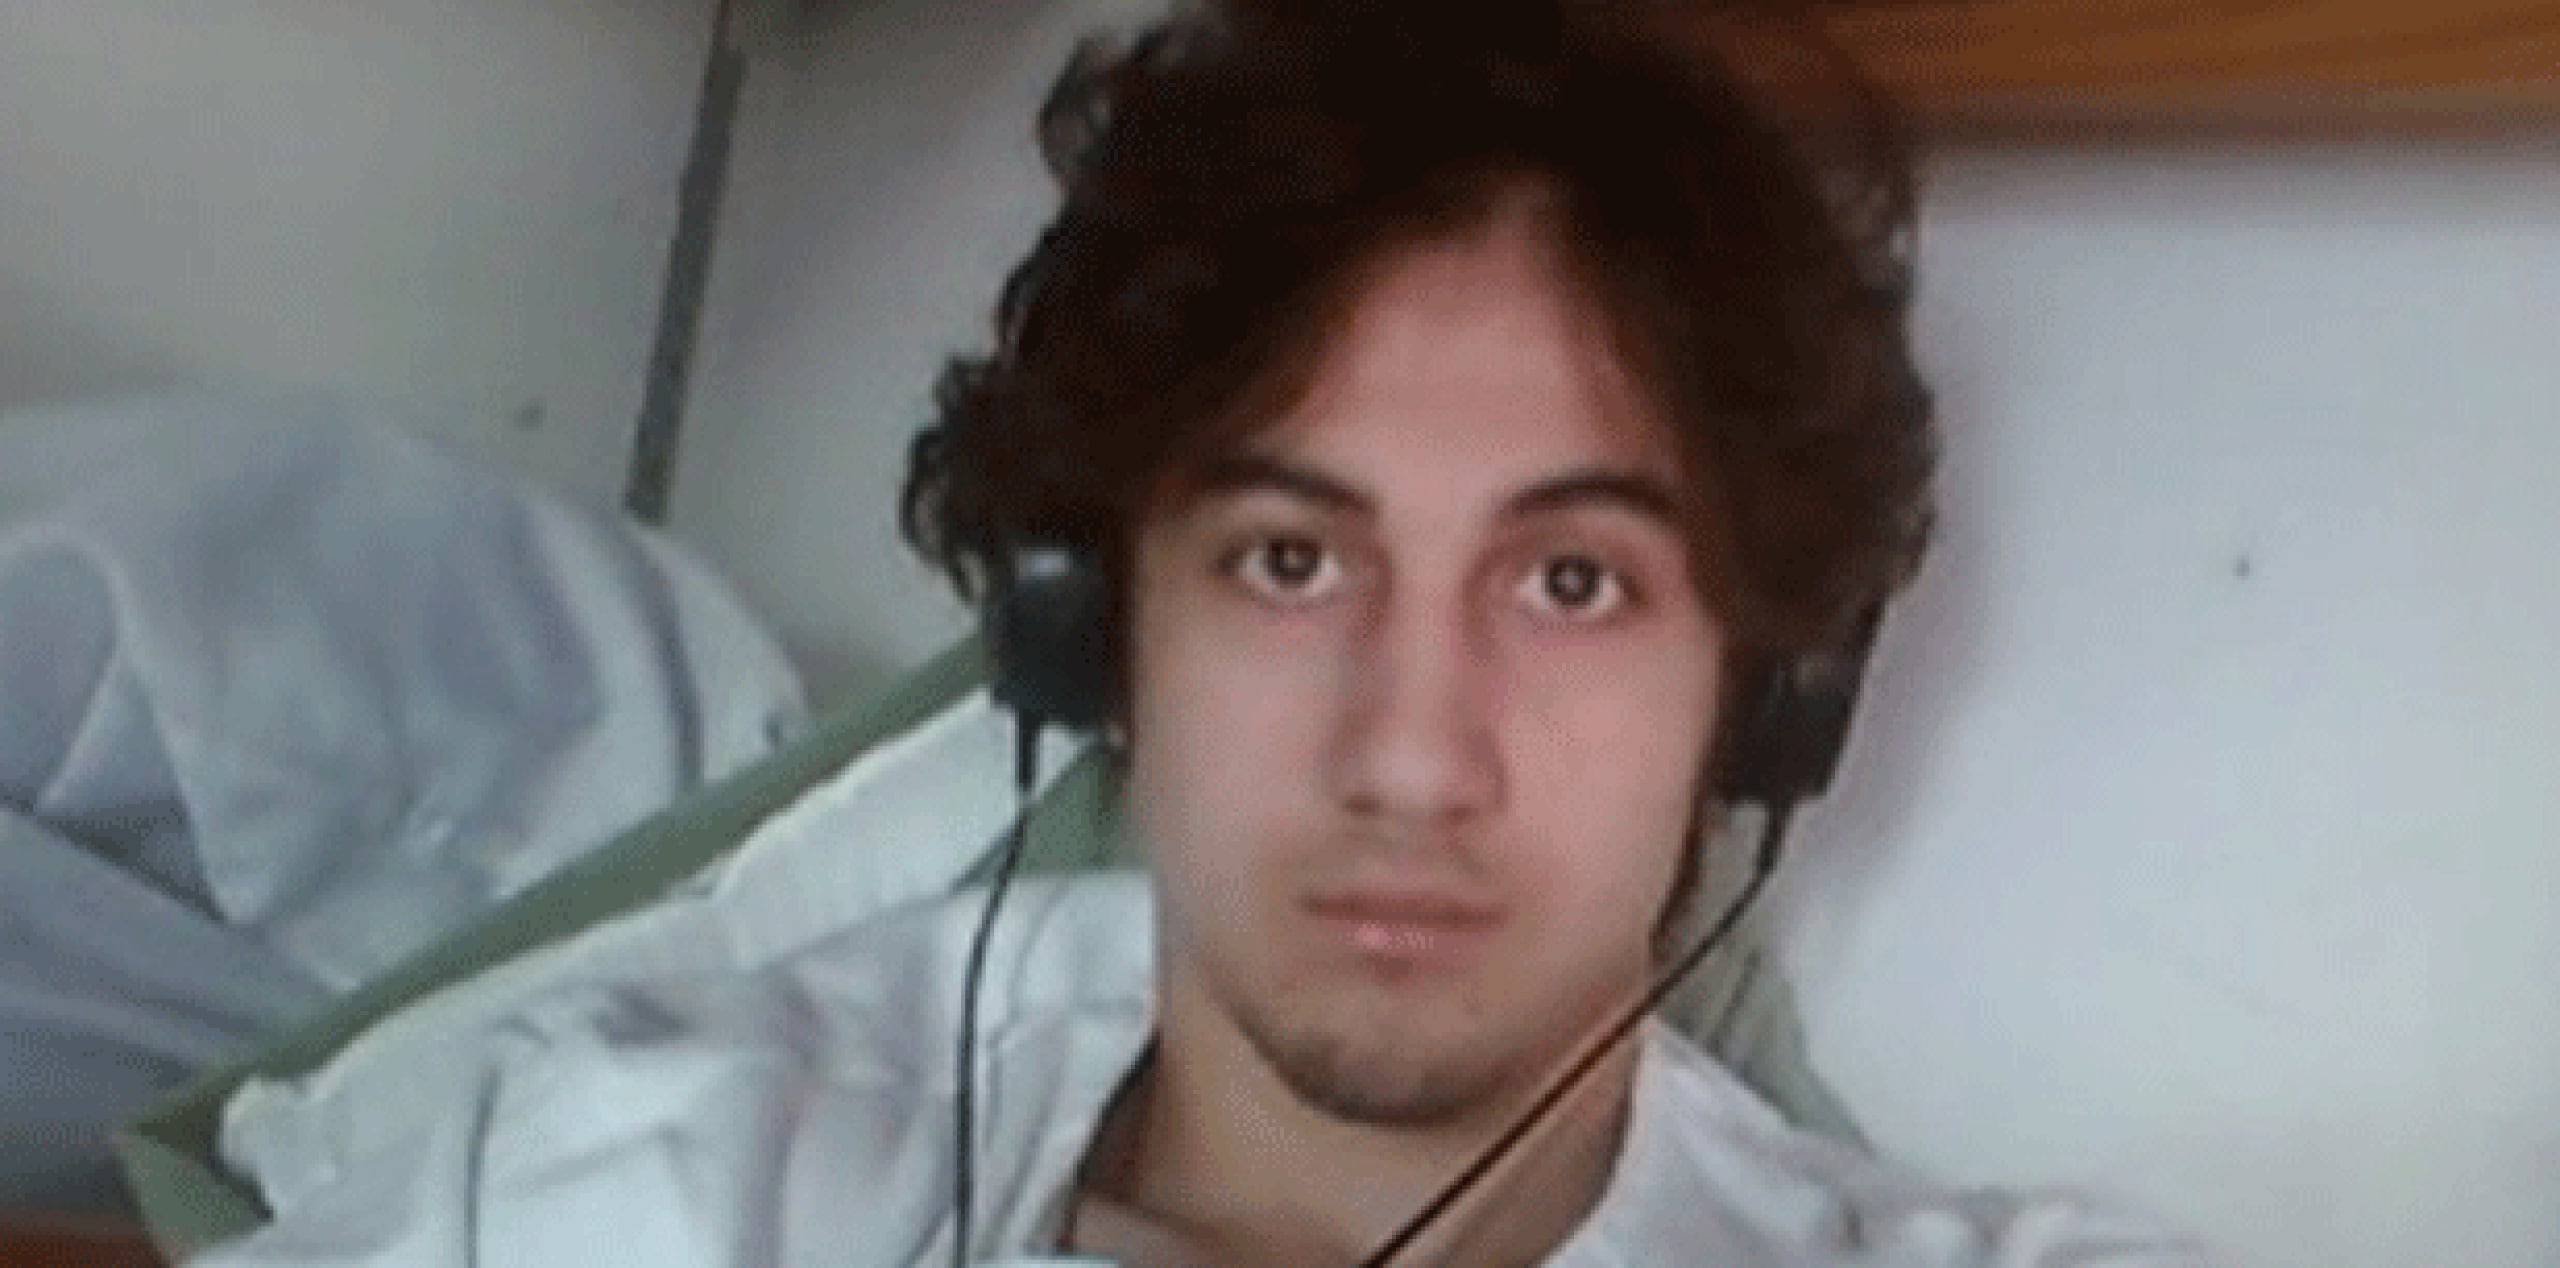 Hablando en inglés con acento ruso, Tsarnaev dijo que escuchó a todos los quienes hablaron en el estrado y reconoció la fuerza, la paciencia y la dignidad de los sobrevivientes.  (Archivo)